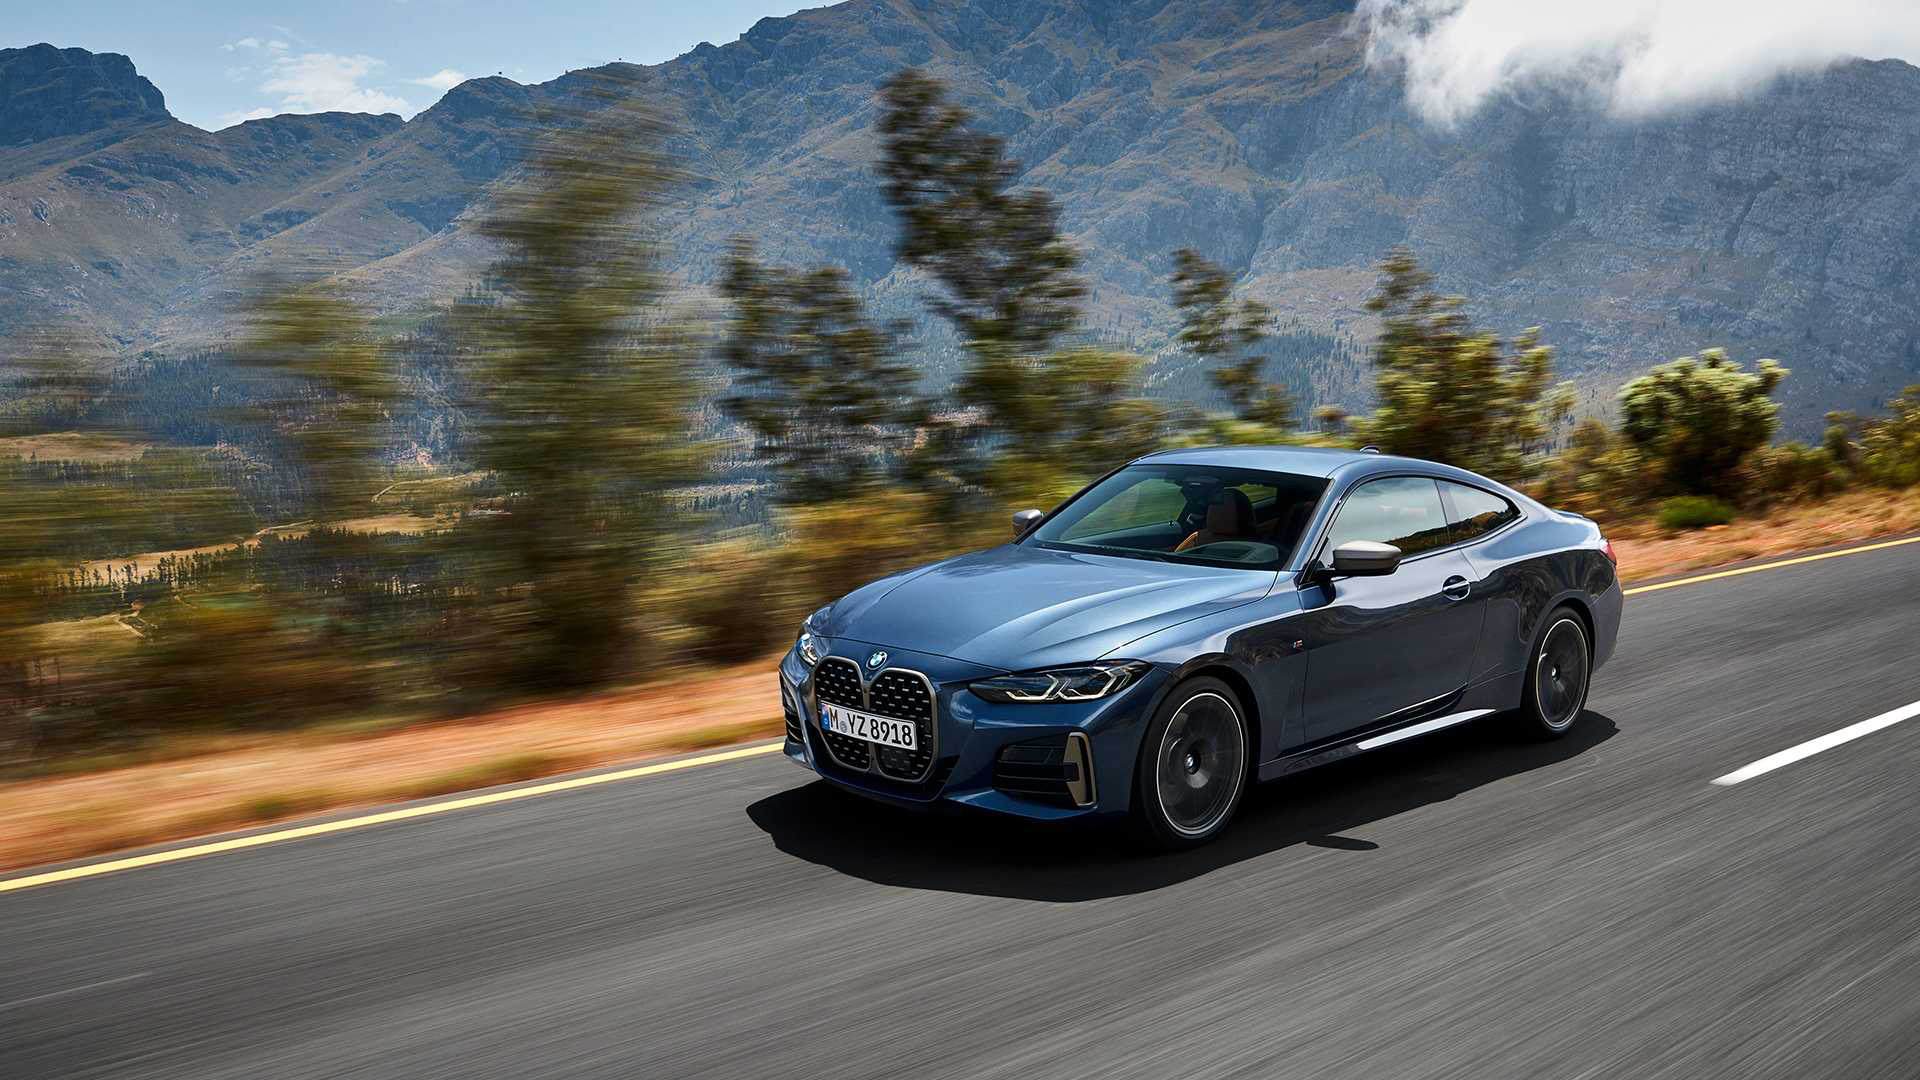 Ra mắt BMW 4-Series 2021: Tản nhiệt to chưa từng thấy, thiết kế đẹp ngang concept - Ảnh 5.